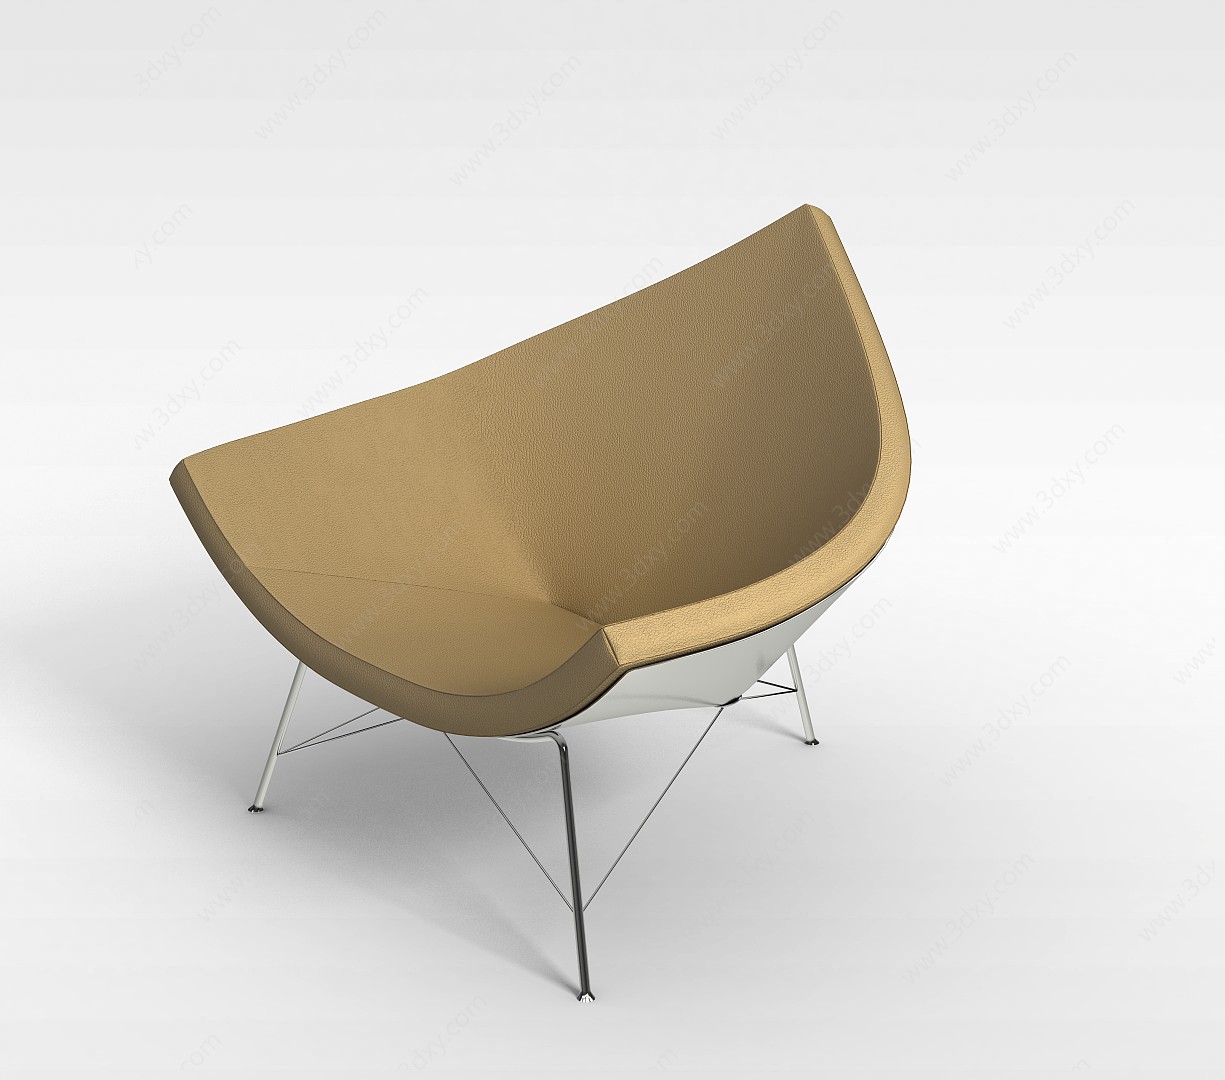 弧形座椅3D模型